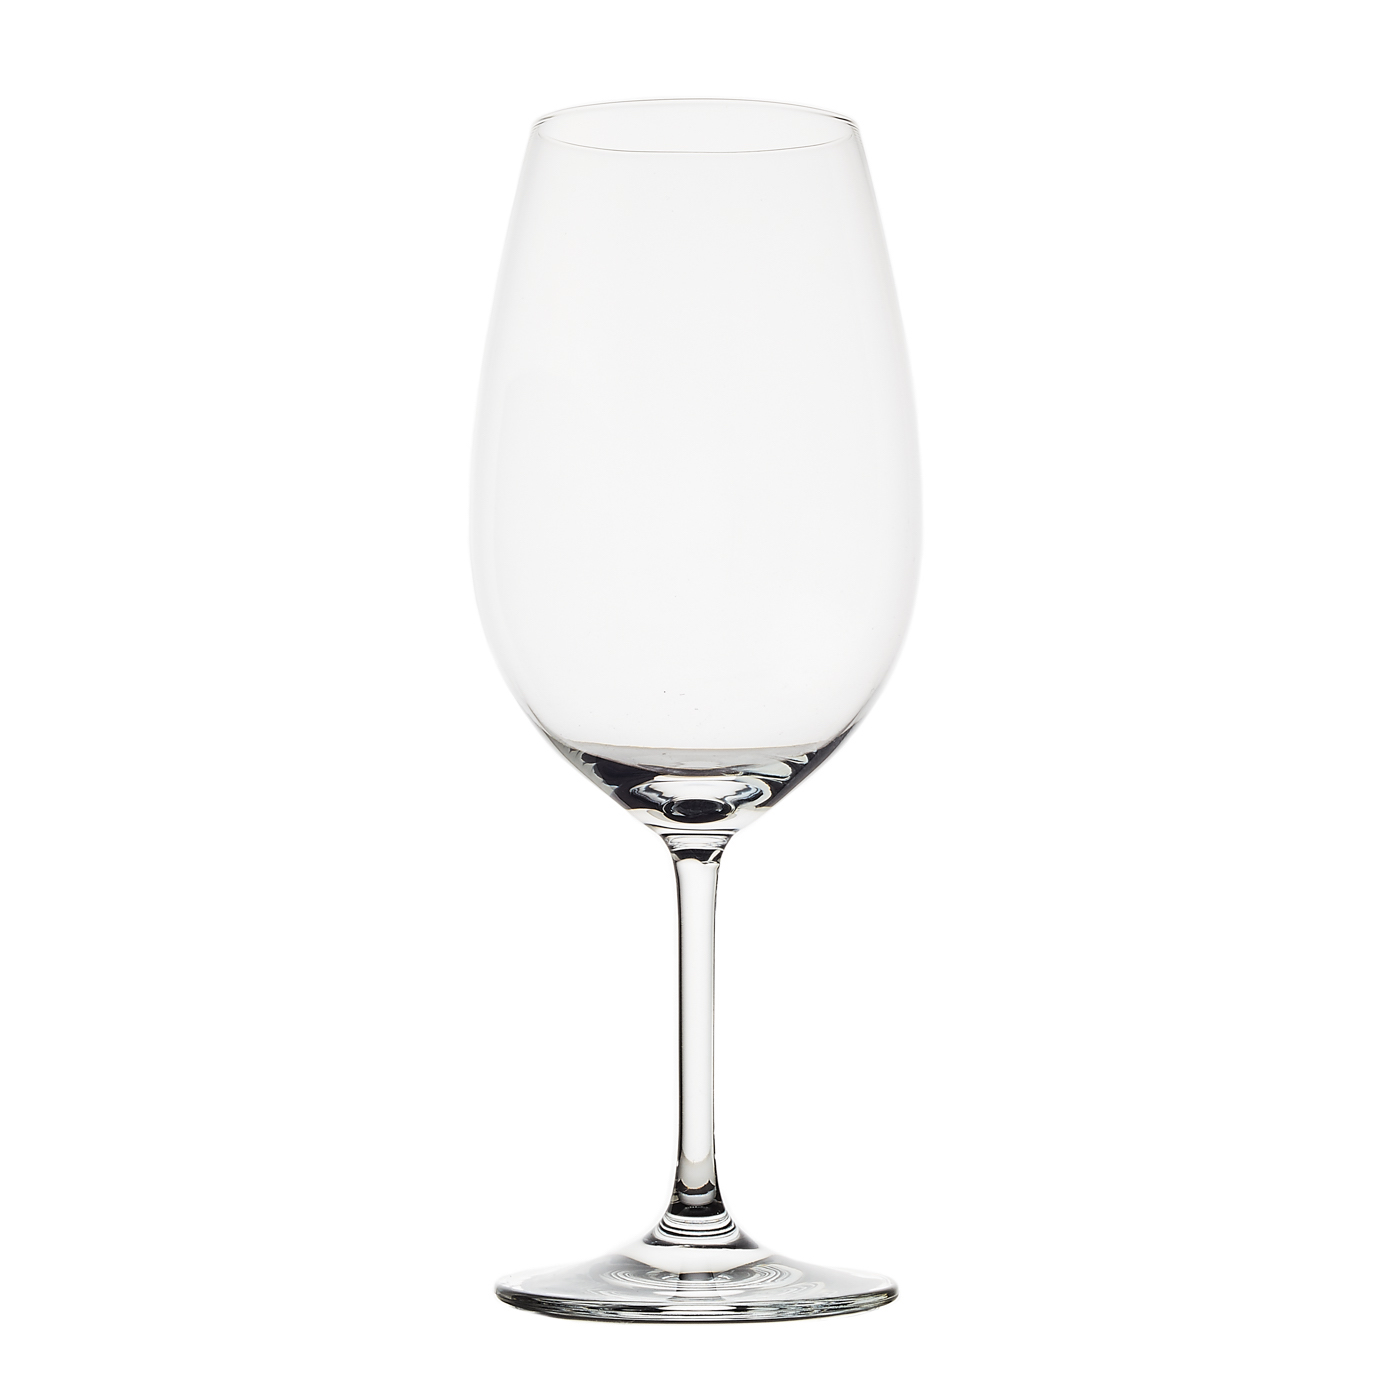 Schott Zwiesel 7544322 Ivento - Juego de 6 copas de vino, cristal, 50 cl,  color transparente #copas #vino Para ver m…